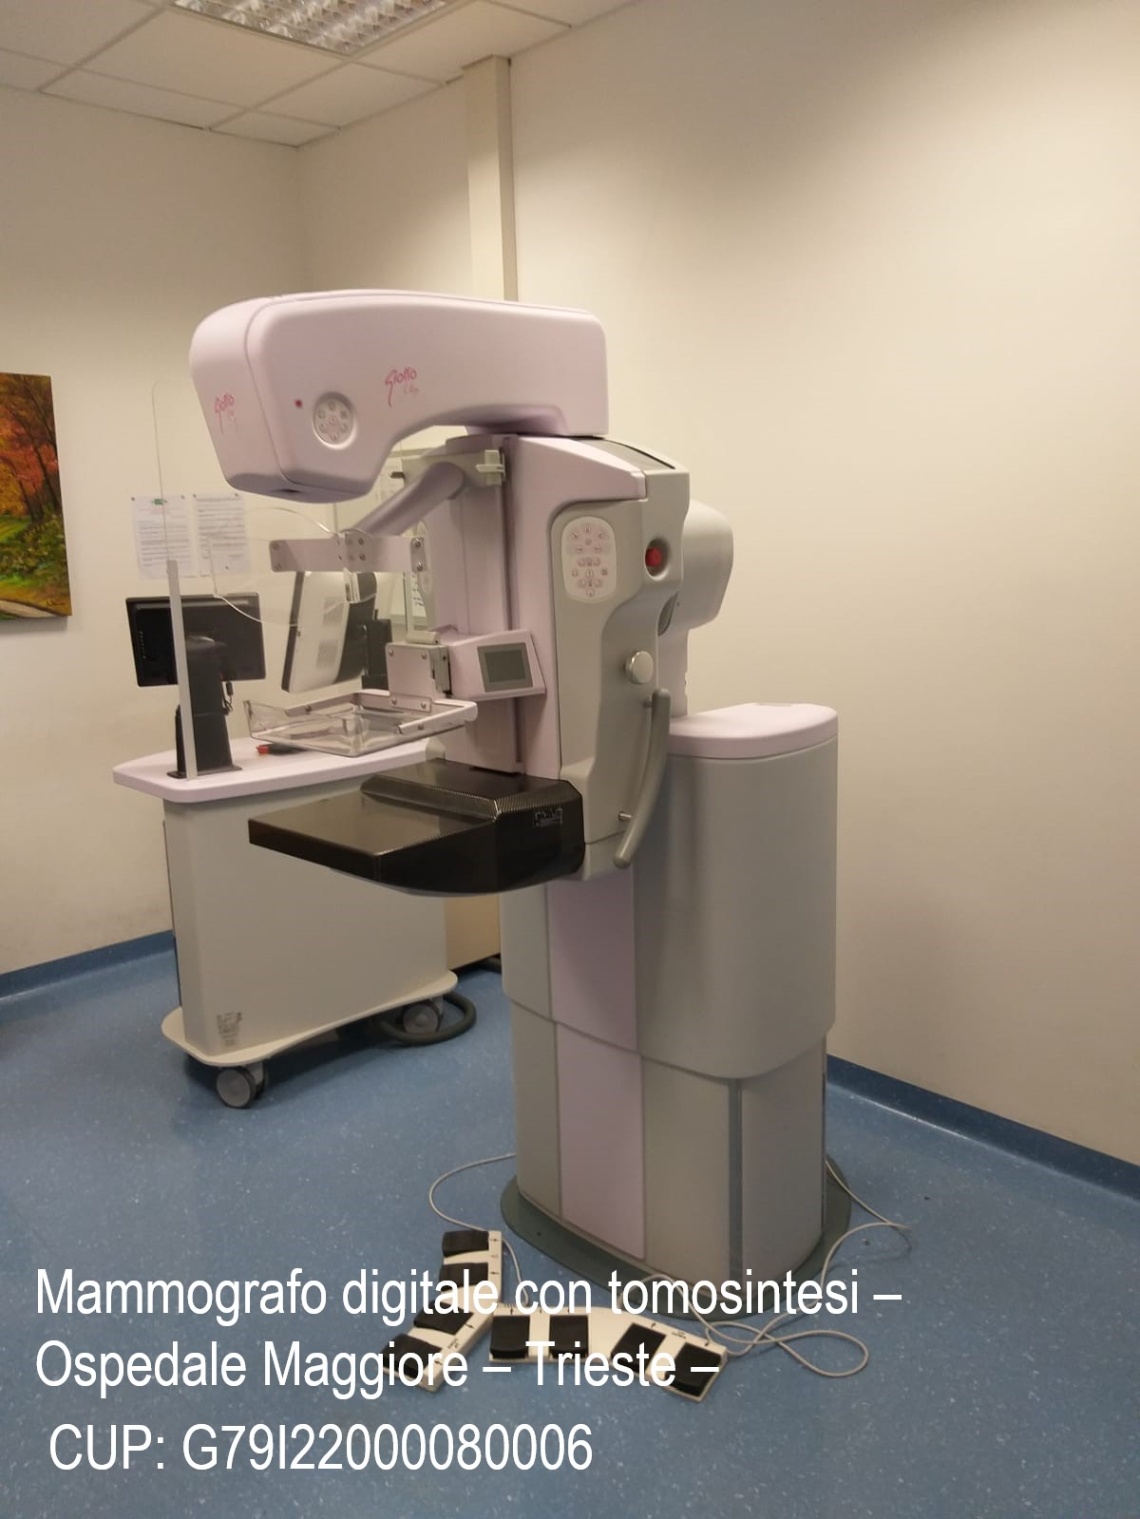 Mammografo Ospedale Maggiore – CUP G79I22000080006